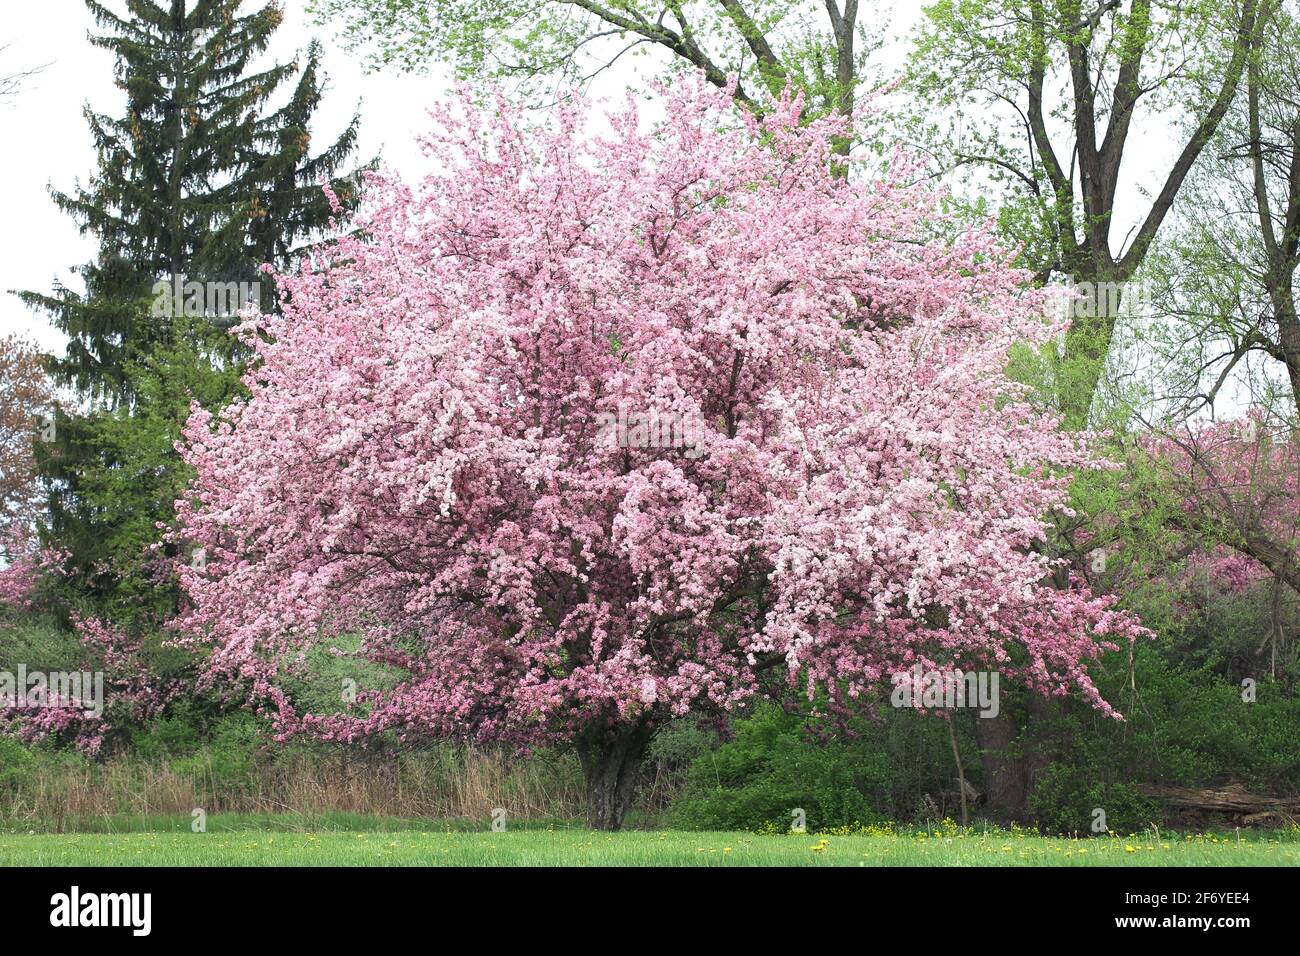 Rosafarbener Blütenbaum in voller Blüte im Frühling mit Öffnen Sie die Blütenblätter Stockfoto